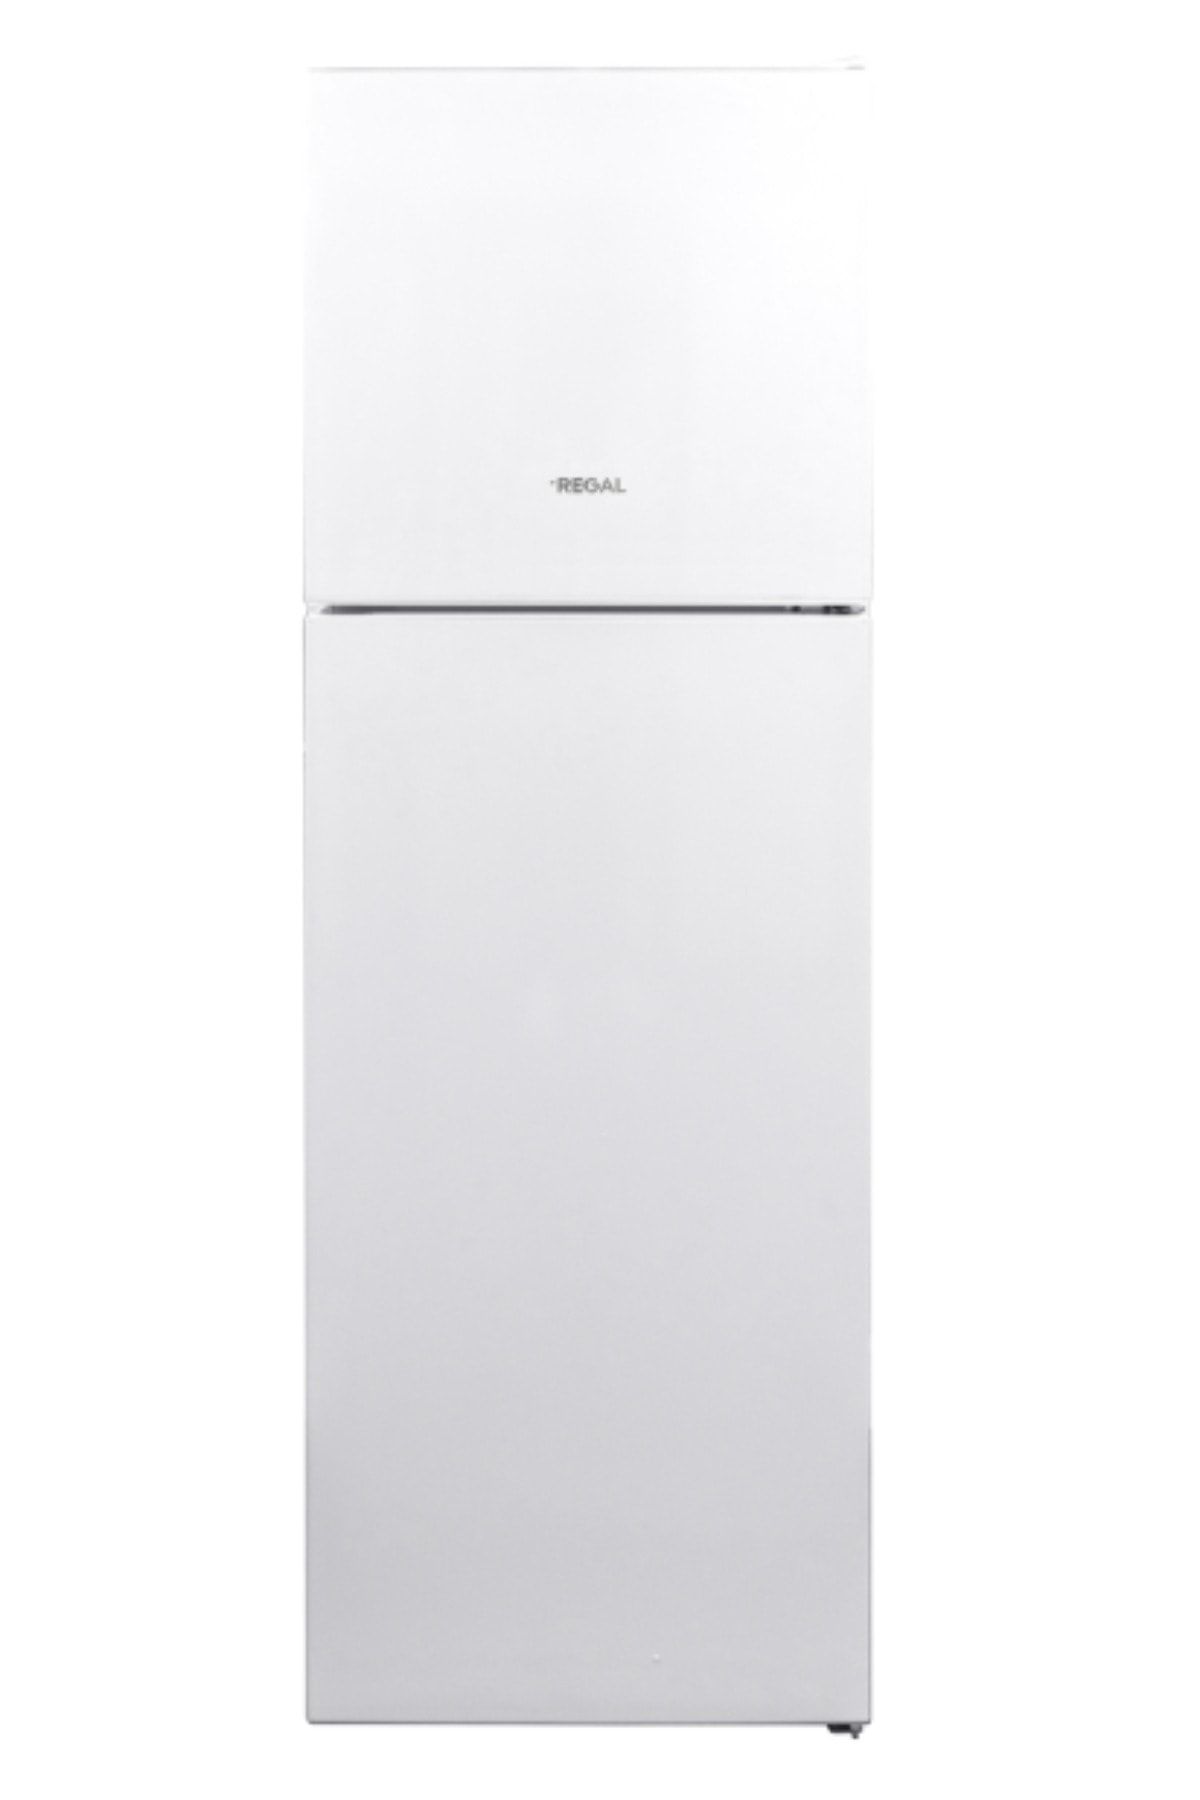 Regal NF 3020 A+ Çift Kapılı Buzdolabı